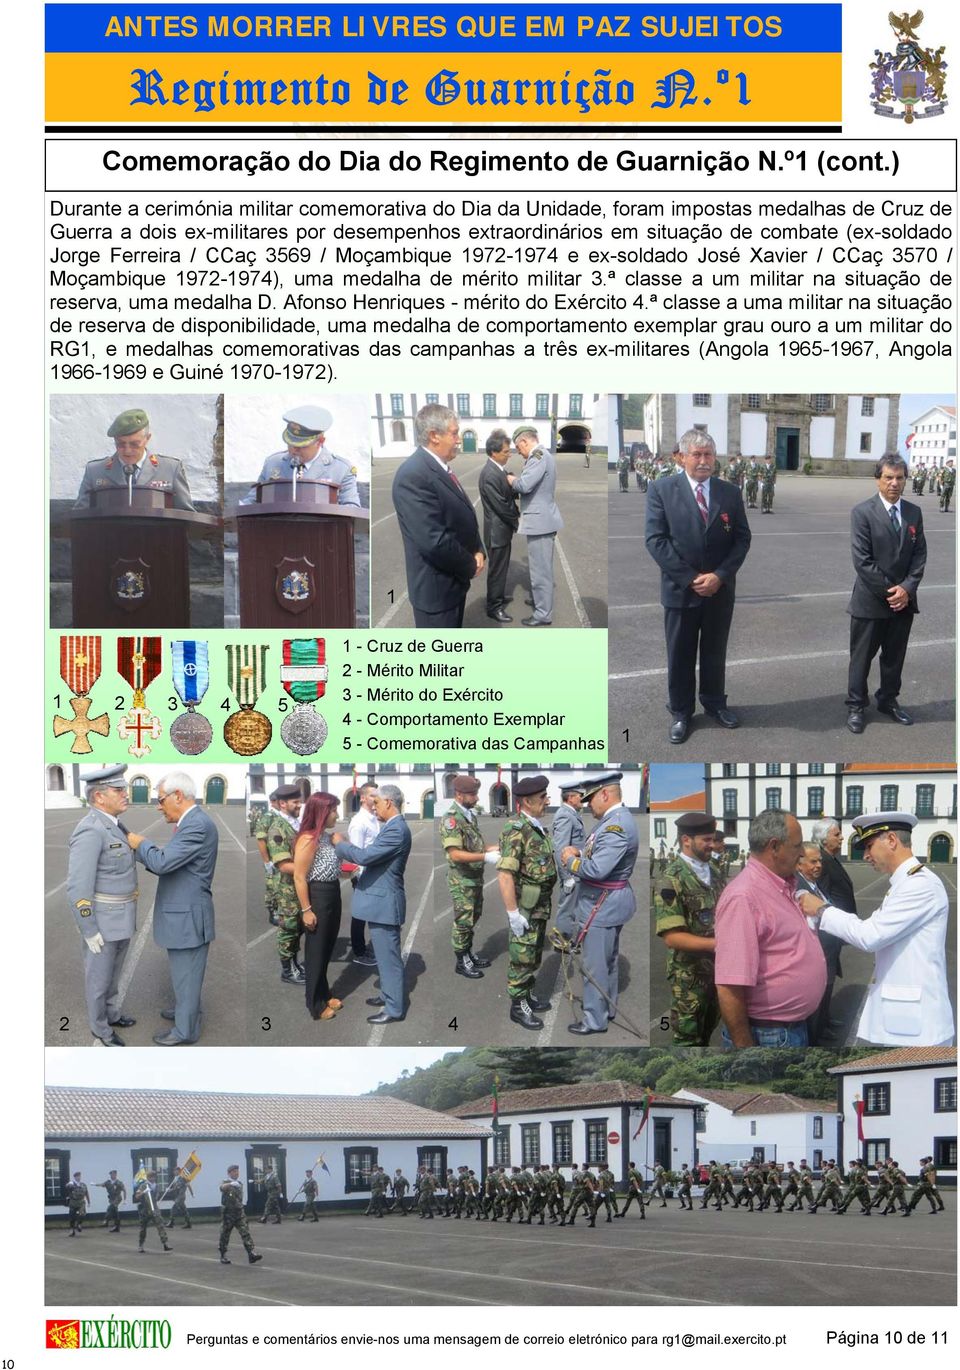 Ferreira / CCaç 3569 / Moçambique 1972-1974 e ex-soldado José Xavier / CCaç 3570 / Moçambique 1972-1974), uma medalha de mérito militar 3.ª classe a um militar na situação de reserva, uma medalha D.